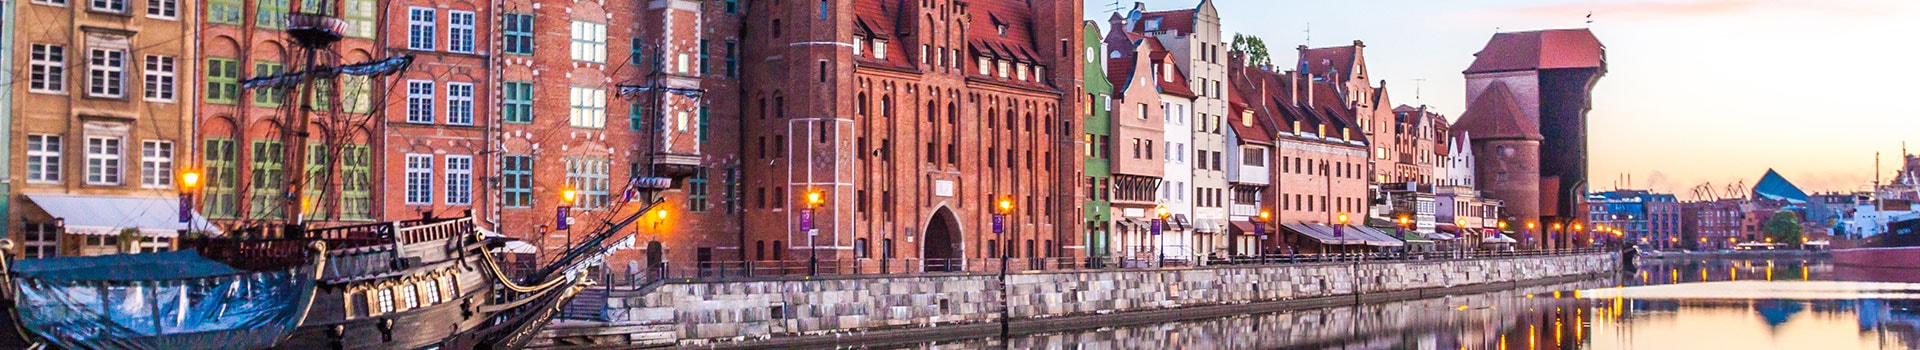 Gdansk - rebiechowo